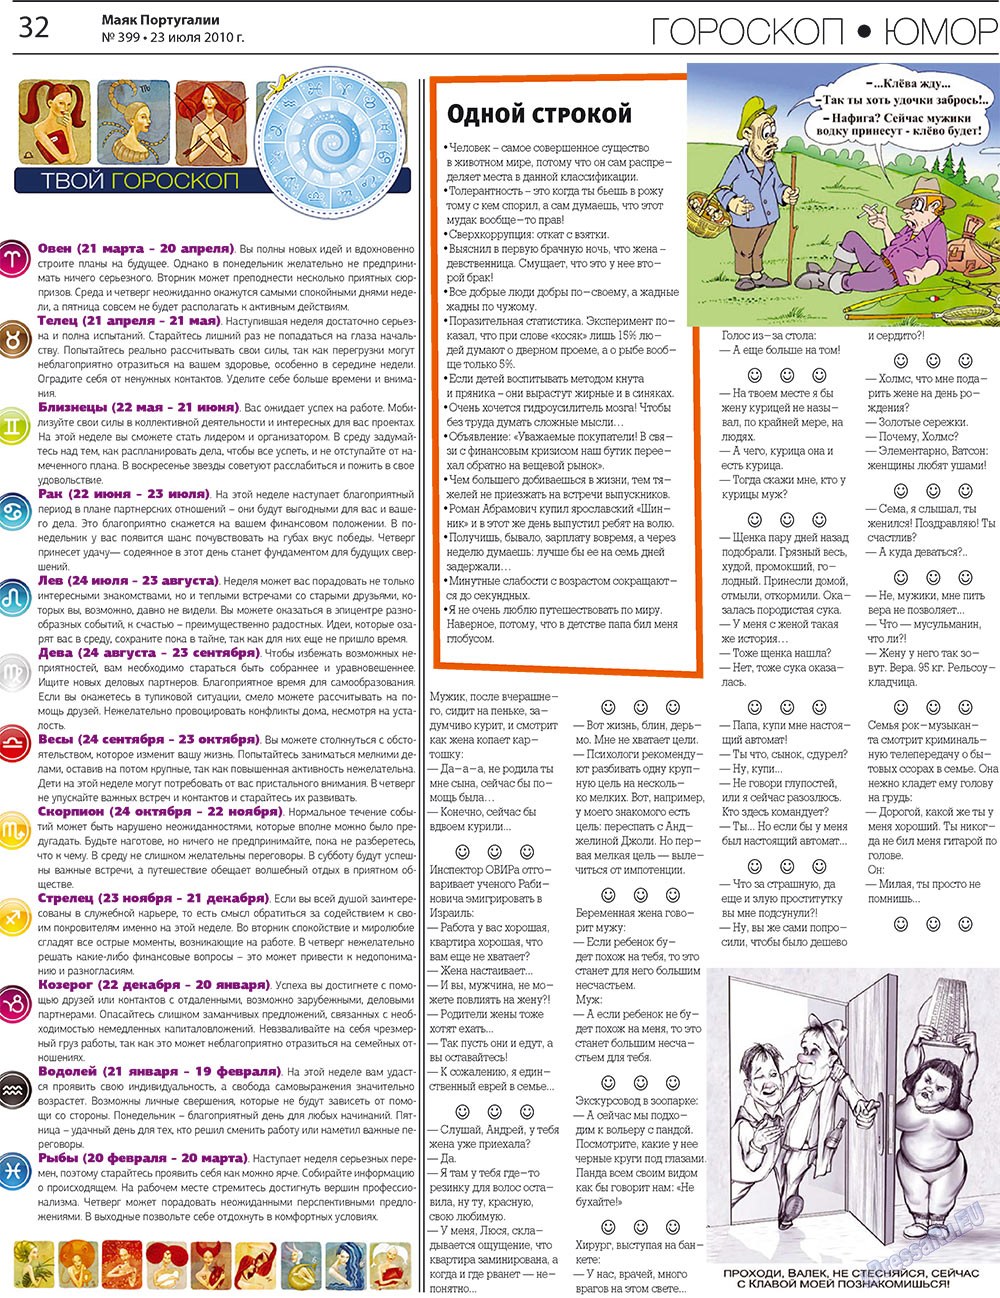 Маяк Португалии (газета). 2010 год, номер 399, стр. 32